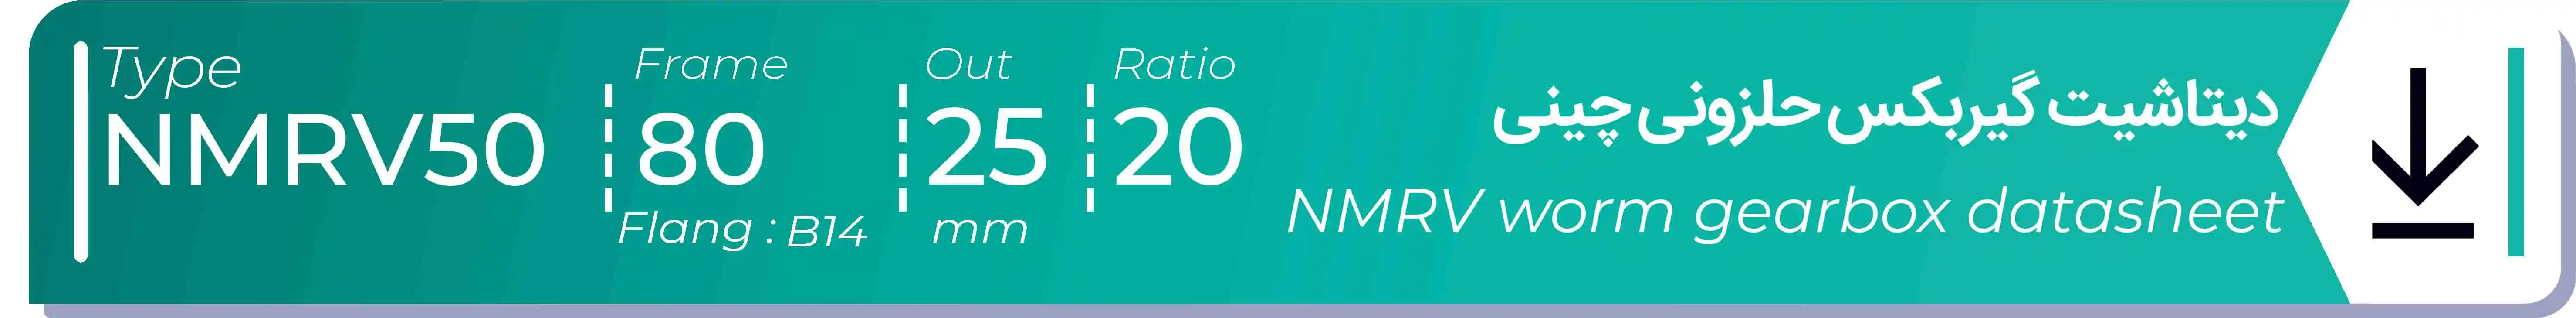  دیتاشیت و مشخصات فنی گیربکس حلزونی چینی   NMRV50  -  با خروجی 25- میلی متر و نسبت20 و فریم 80